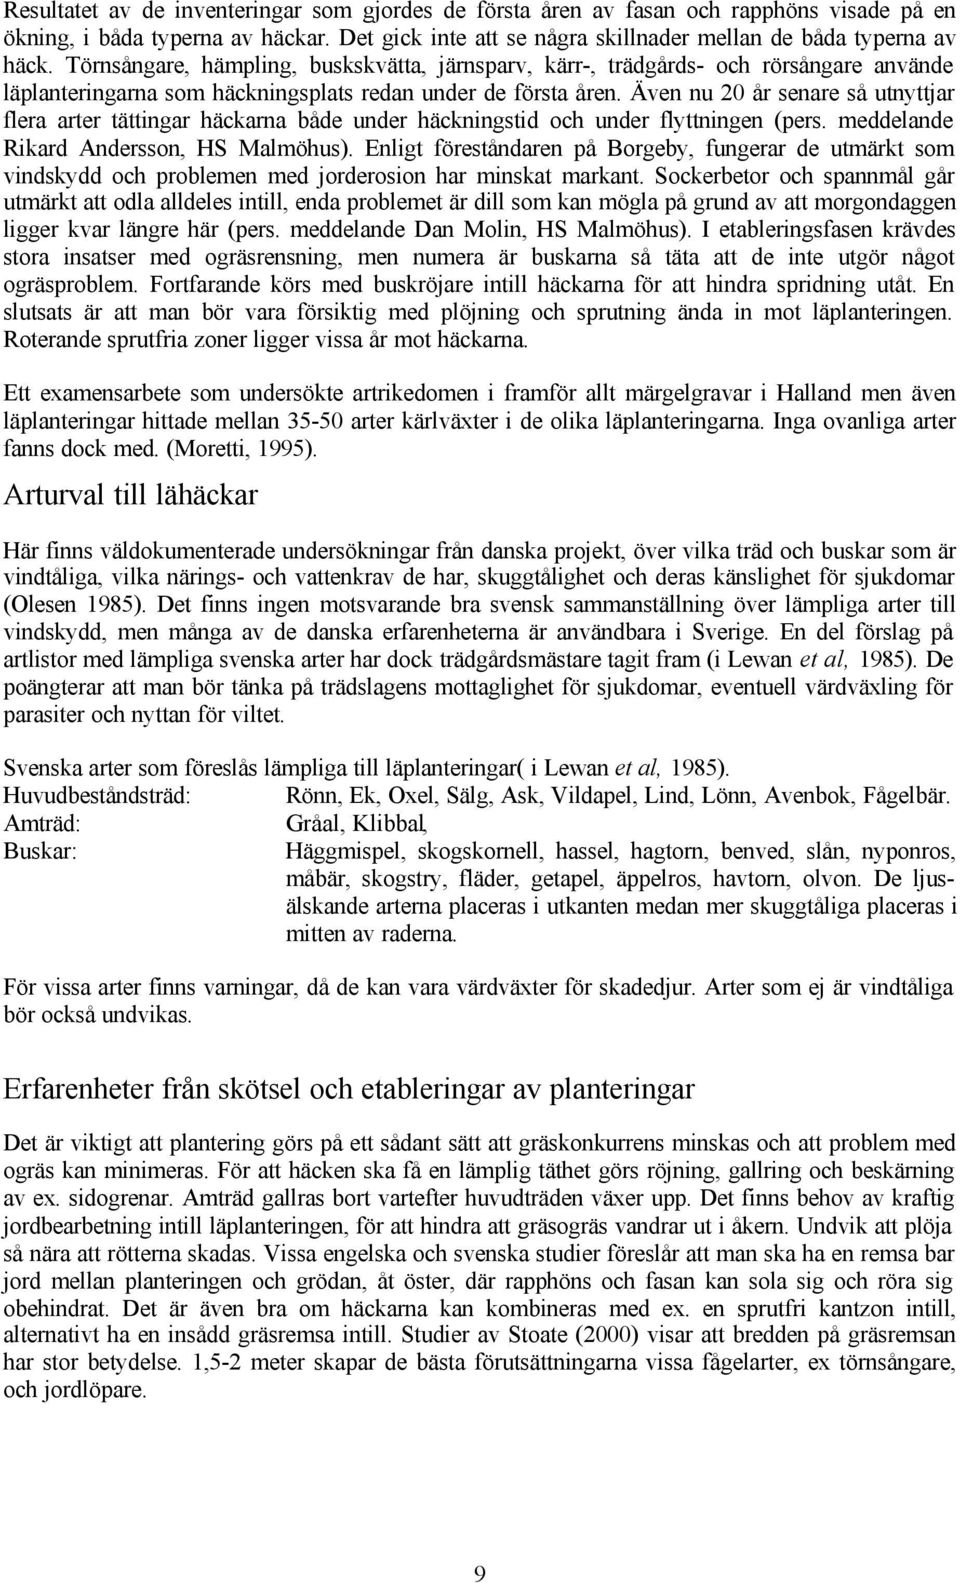 Även nu 20 år senare så utnyttjar flera arter tättingar häckarna både under häckningstid och under flyttningen (pers. meddelande Rikard Andersson, HS Malmöhus).